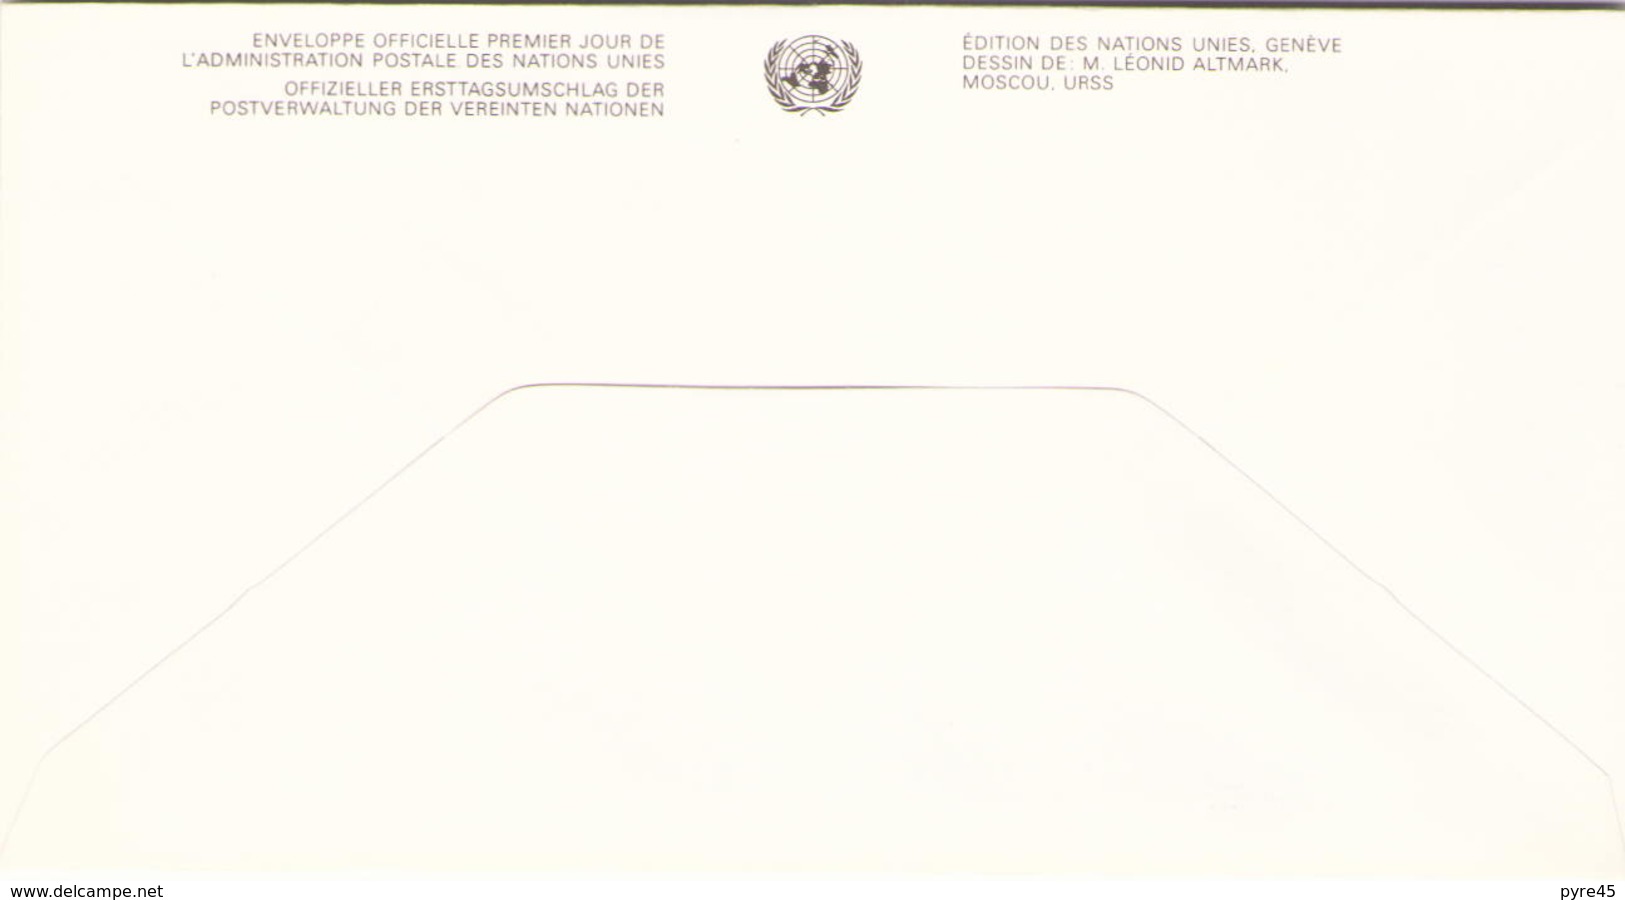 NATIONS UNIES FDC DU 20 NOVEMBRE 1991 NEW YORK SERIE DES DROITS DE L HOMME - Storia Postale